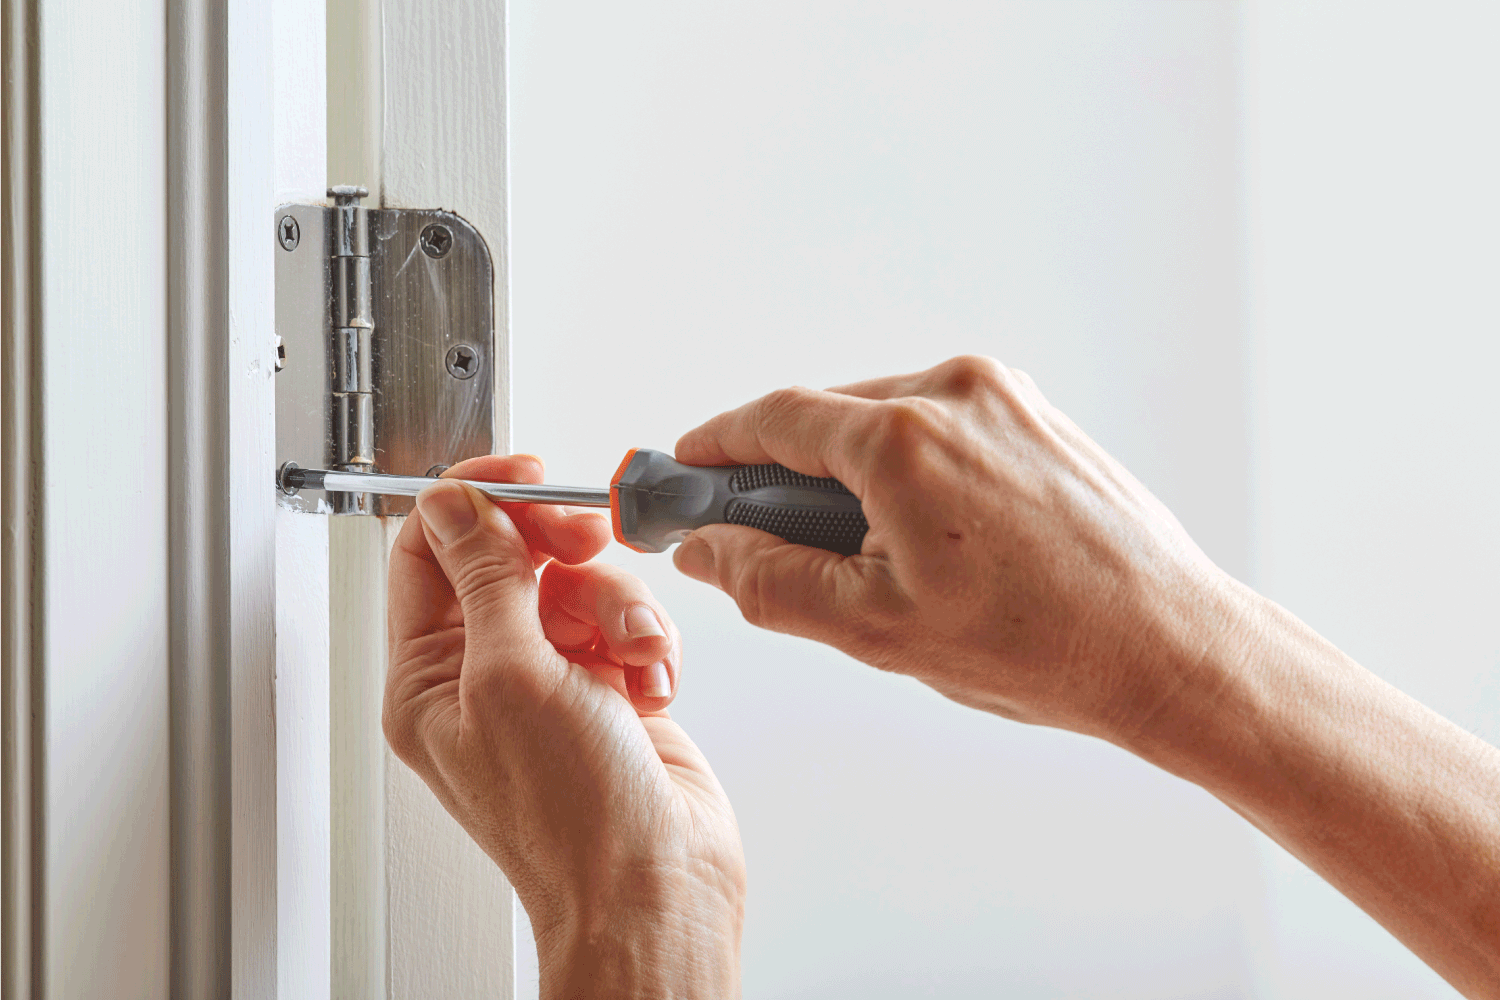 Hands with screwdriver fixing a door hinge.